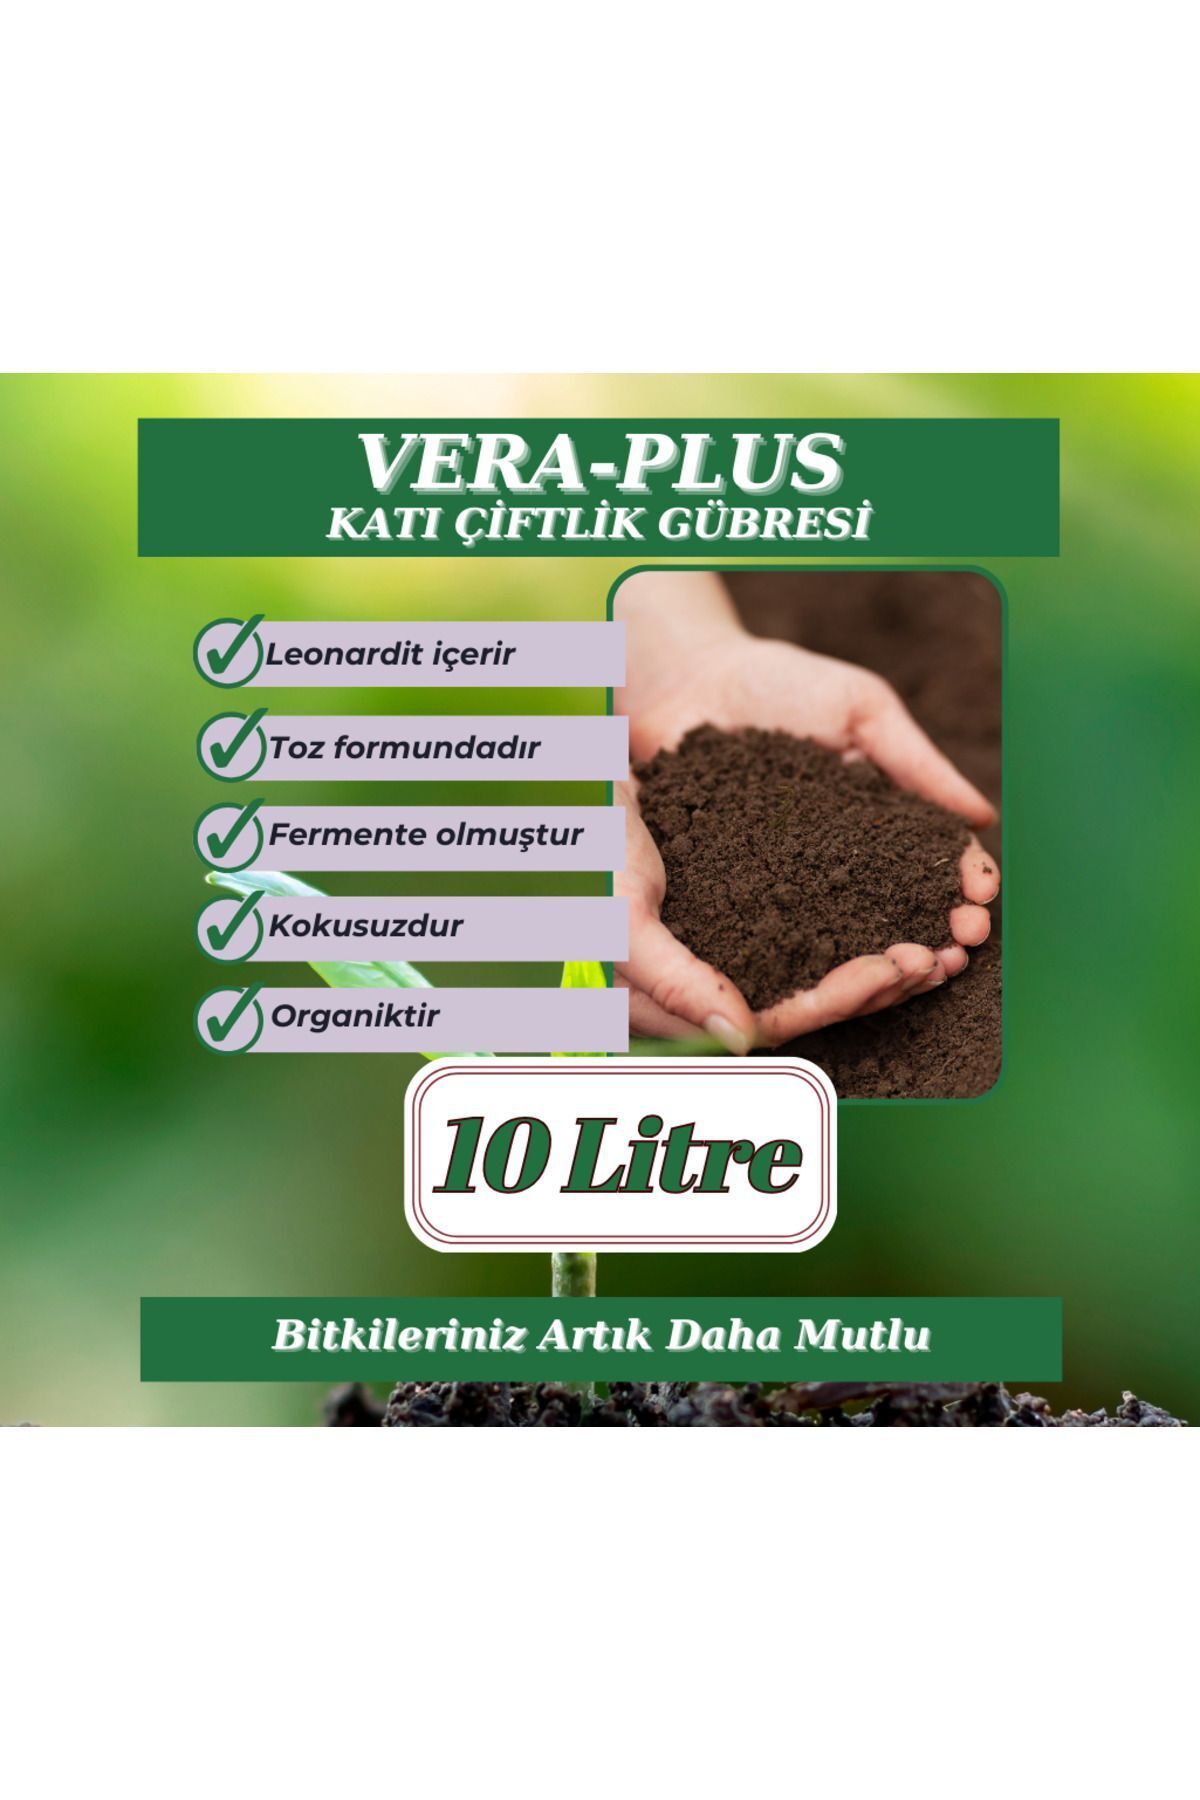 MF Botanik Vera-plus Organik Katı Çiftlik Gübresi - 10 Litre